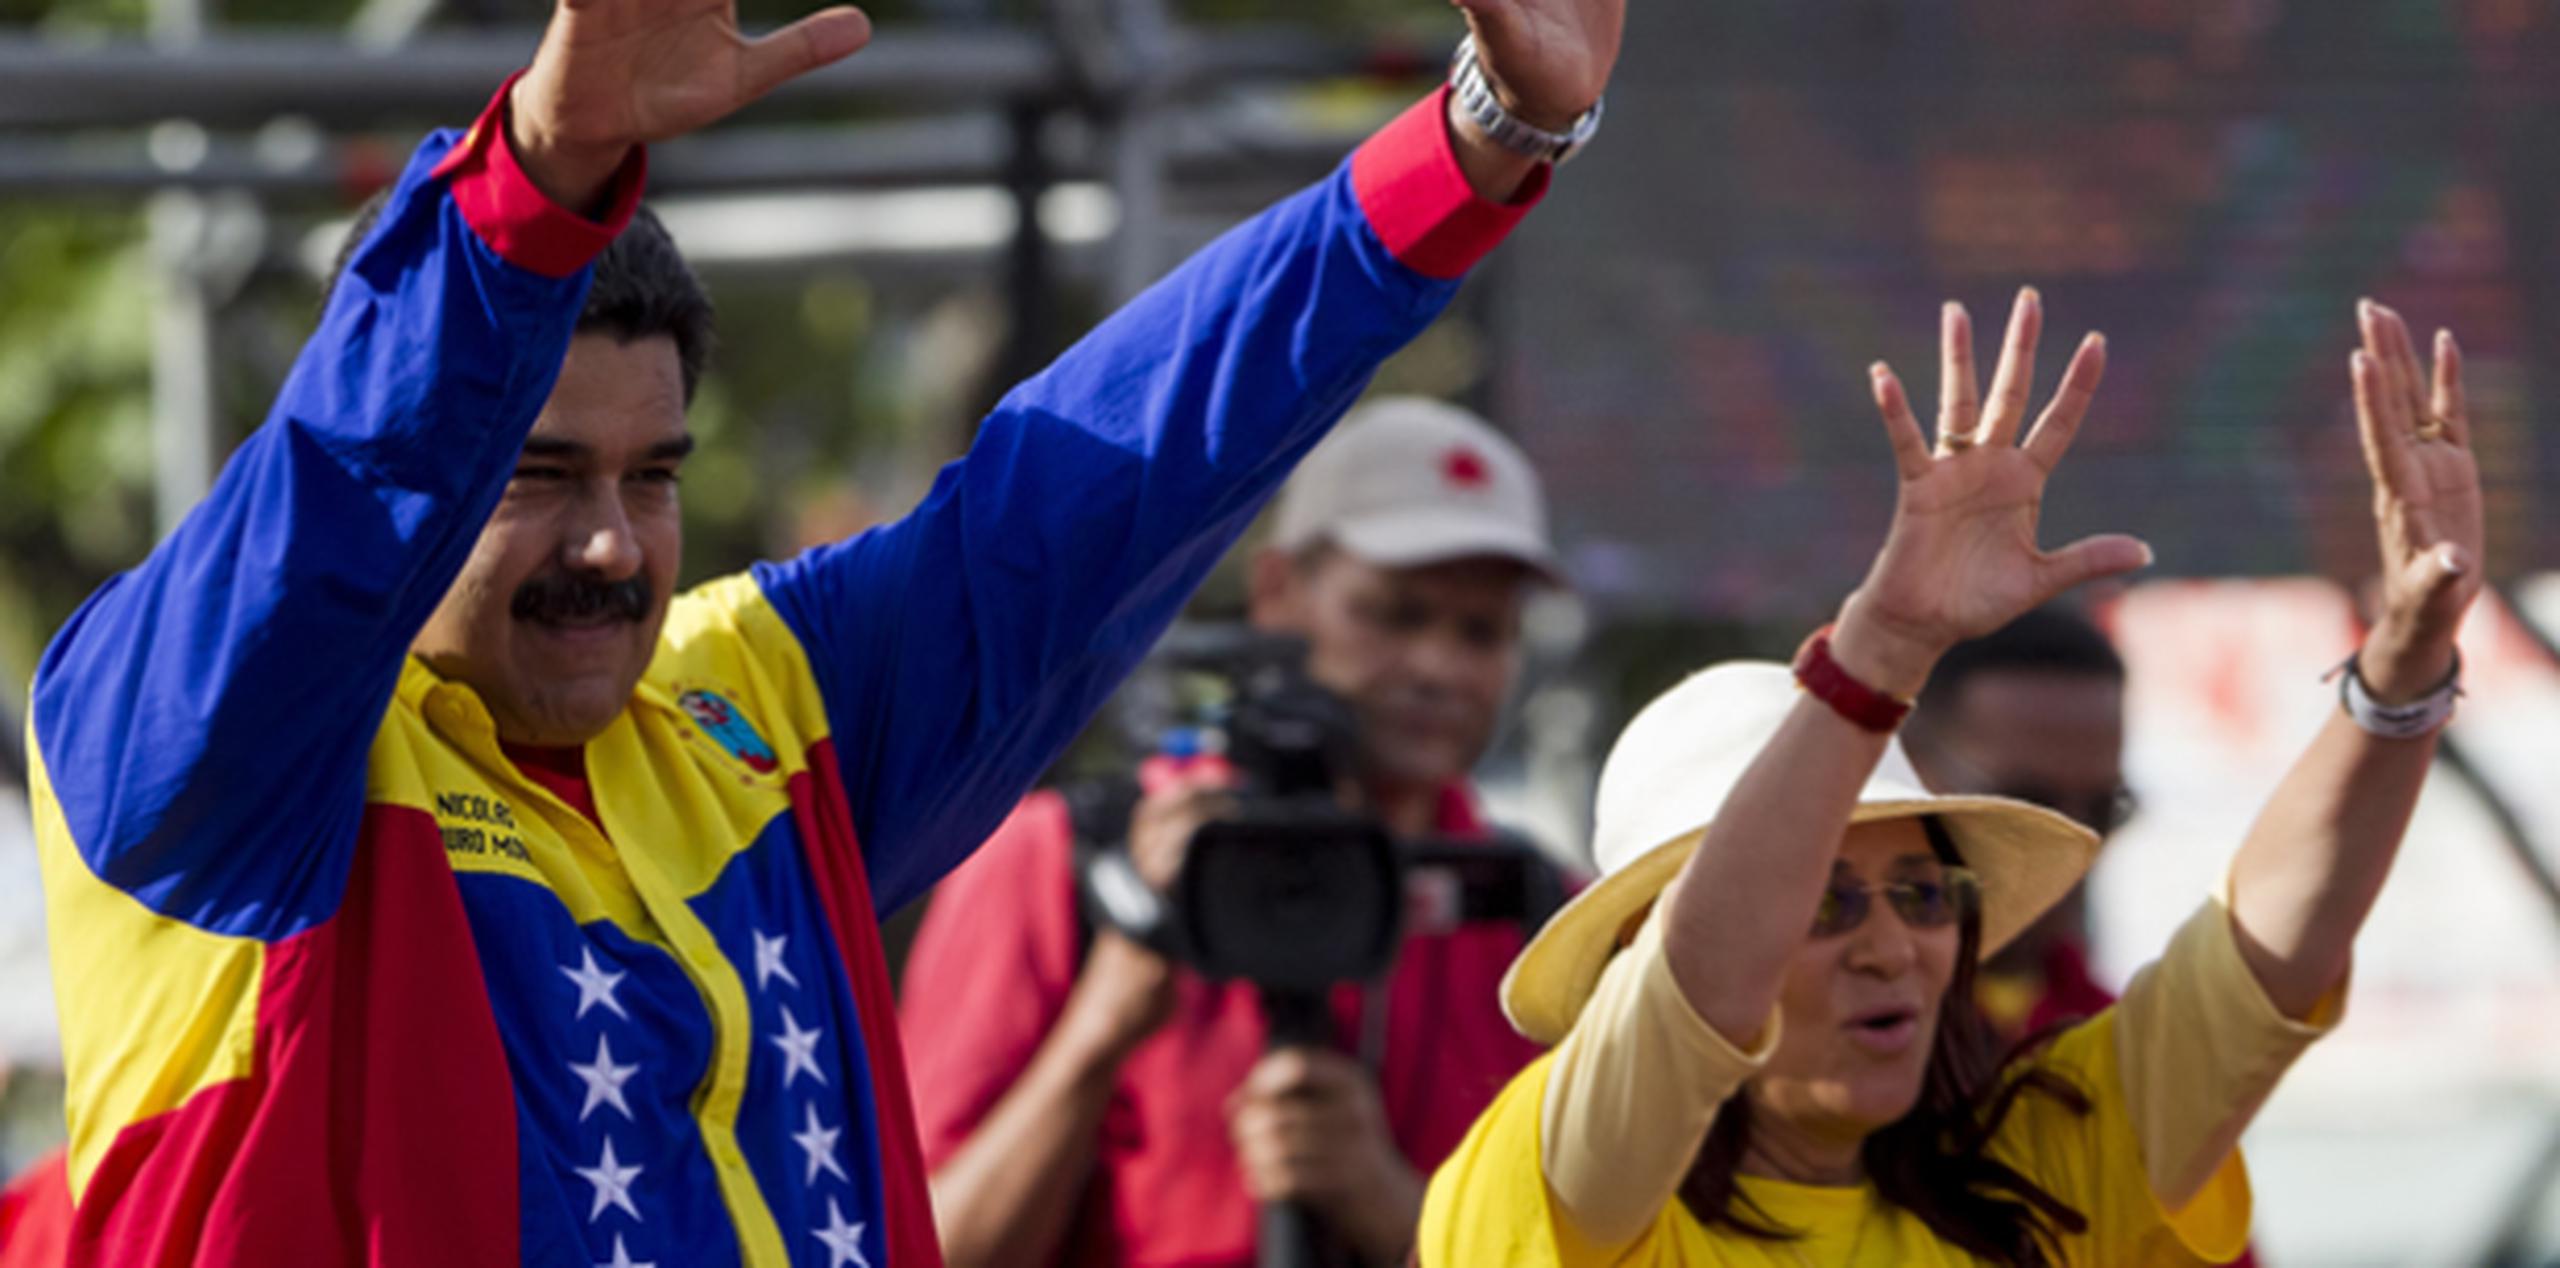 El presidente venezolano, Nicolás Maduro, y su esposa y candidata a diputada, Cilia Flores, asisten al cierre de campaña de la coalición oficialista Gran Polo Patriótico (GPP)  en Caracas, Venezuela. (EFE)